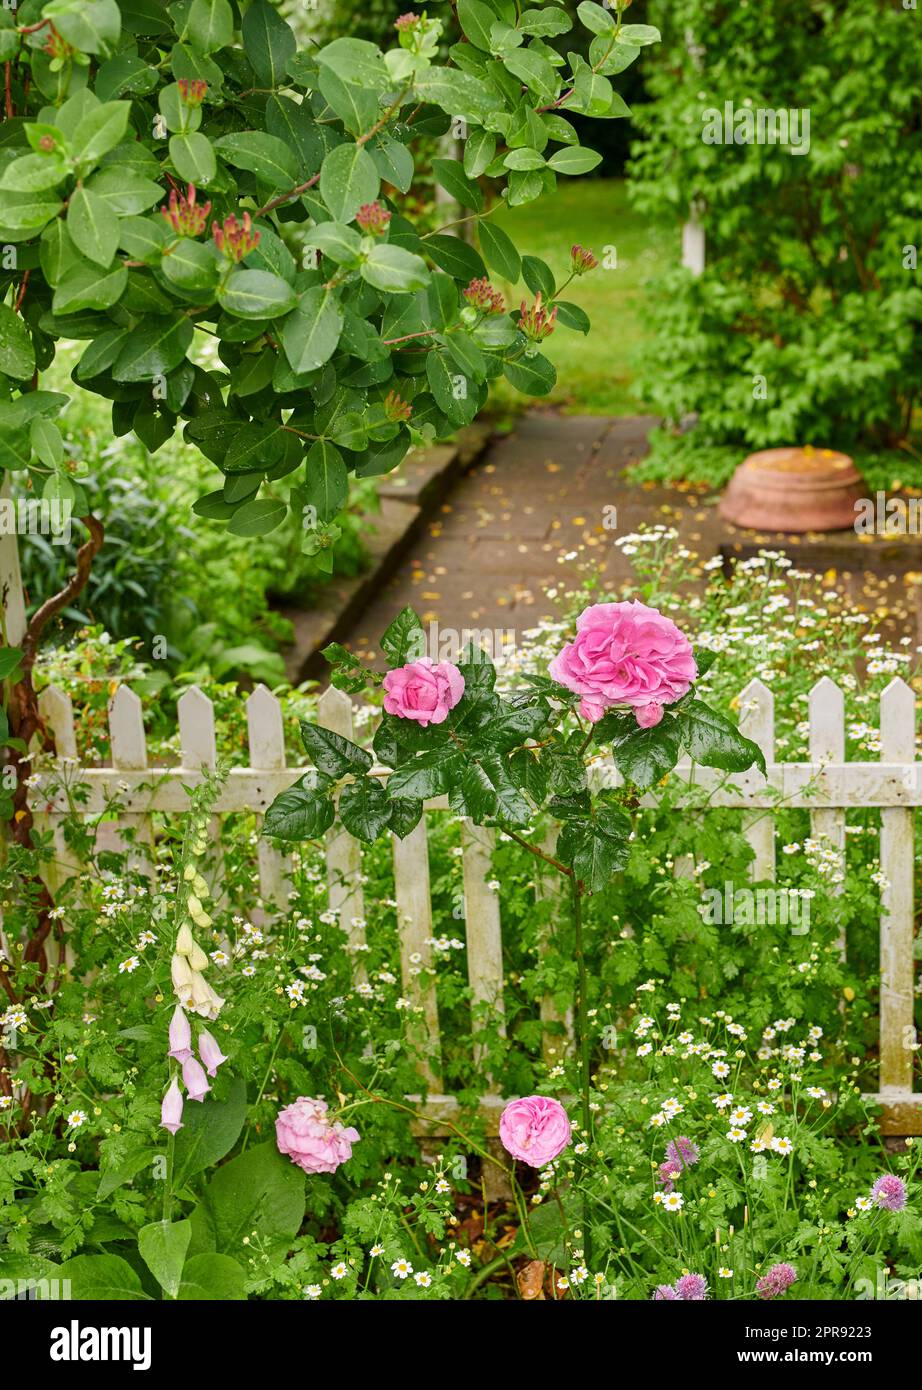 Rosafarbene französische Rosen und gewöhnliche Foxhandschuhblumen wachsen und blühen in einem üppig grünen Garten mit weißem Lattenzaun. Gartenbau, Zierpflanzenanbau in abgeschiedenem und privatem Garten Stockfoto